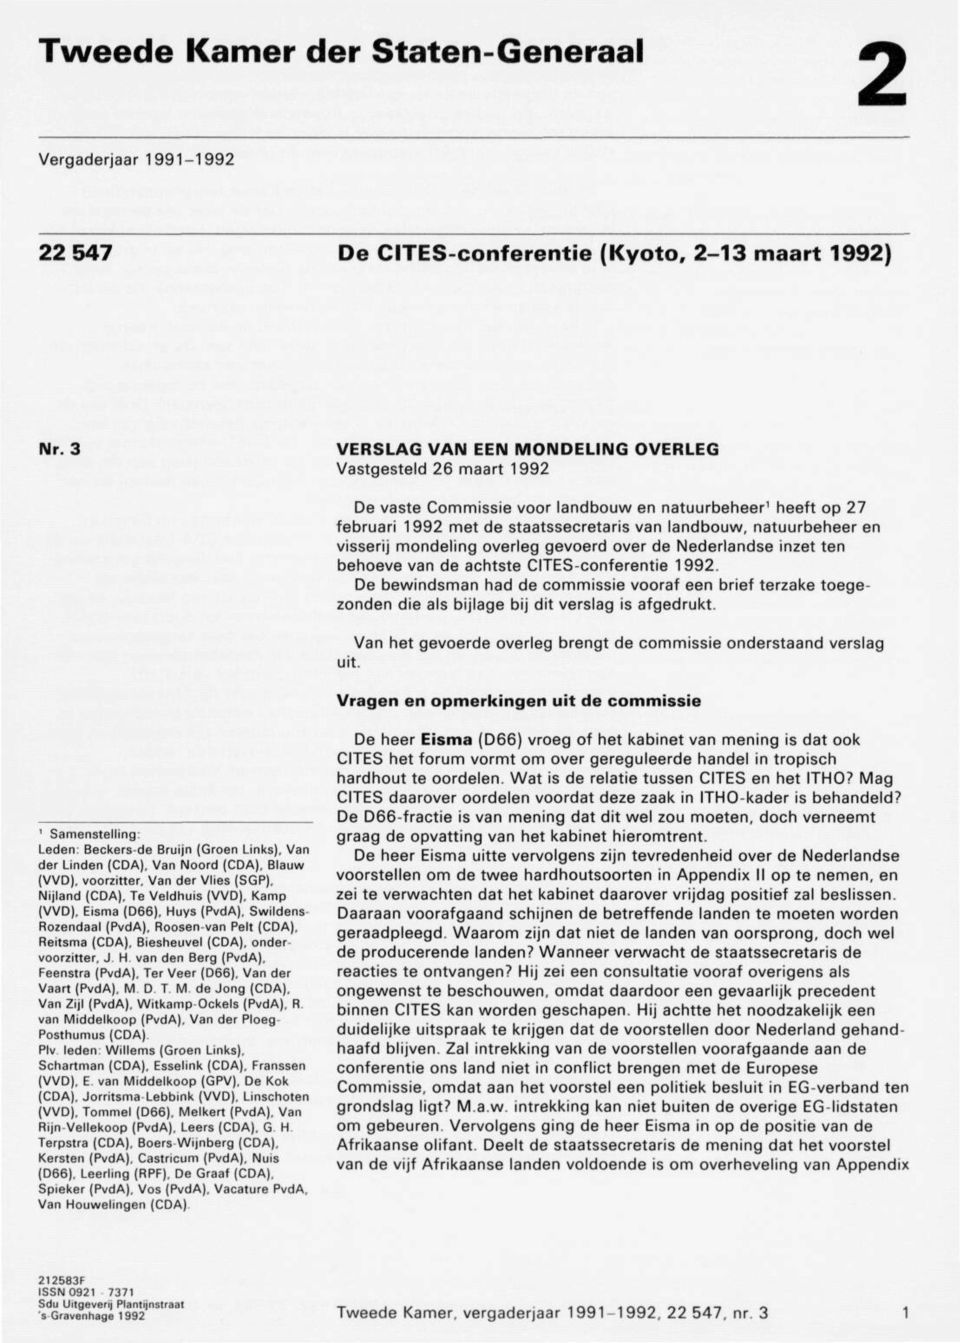 visserij mondeling overleg gevoerd over de Nederlandse inzet ten behoeve van de achtste CITES-conferentie 1992.